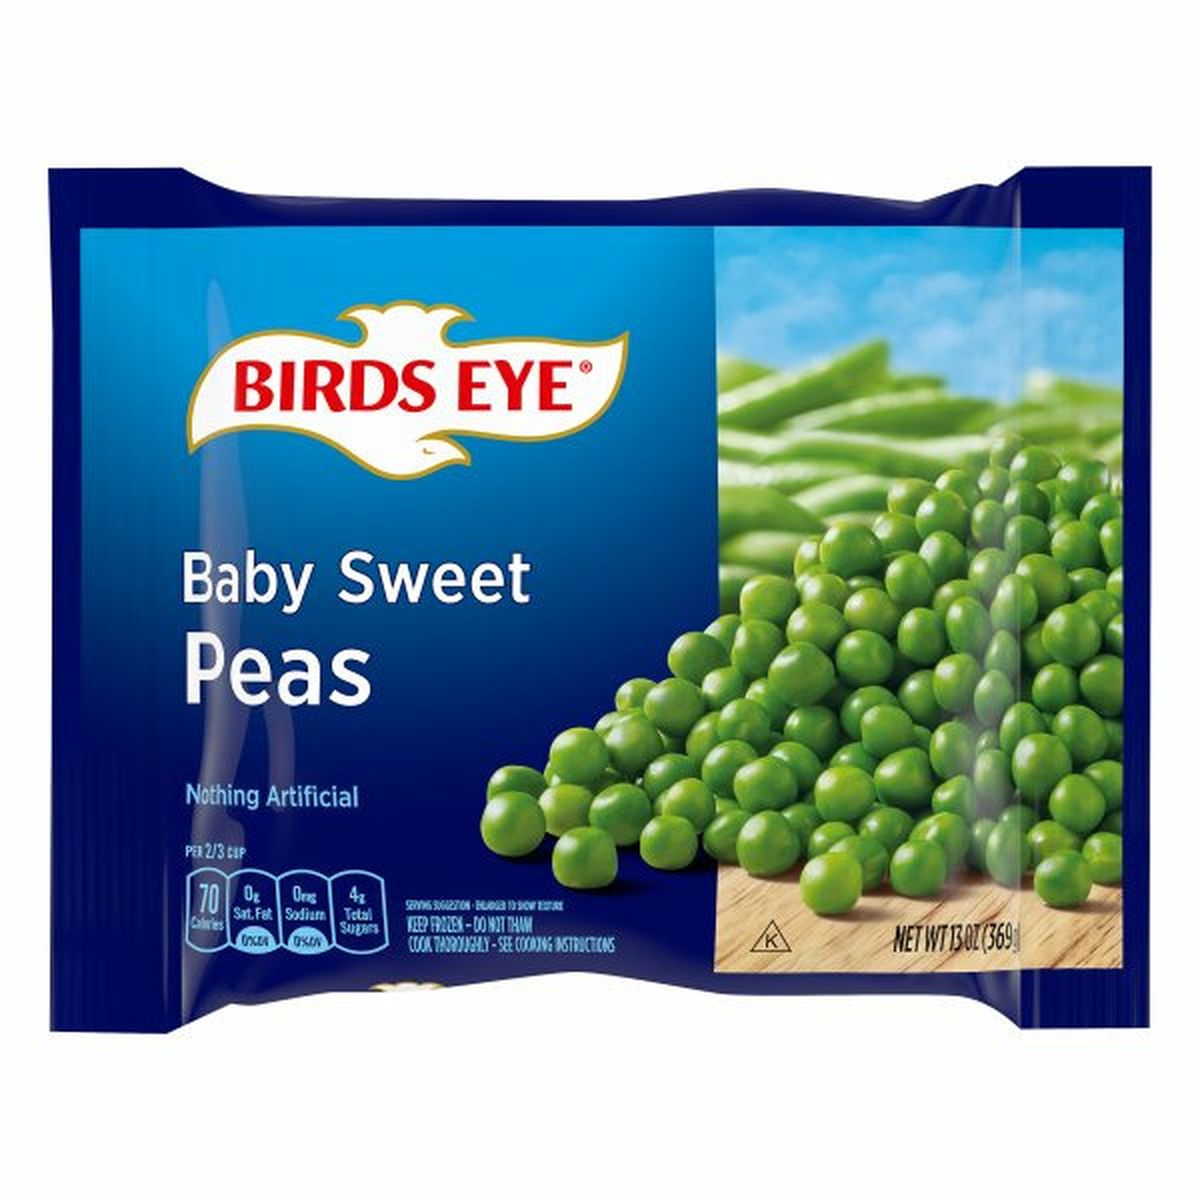 Calories in Birds Eye Baby Sweet Peas